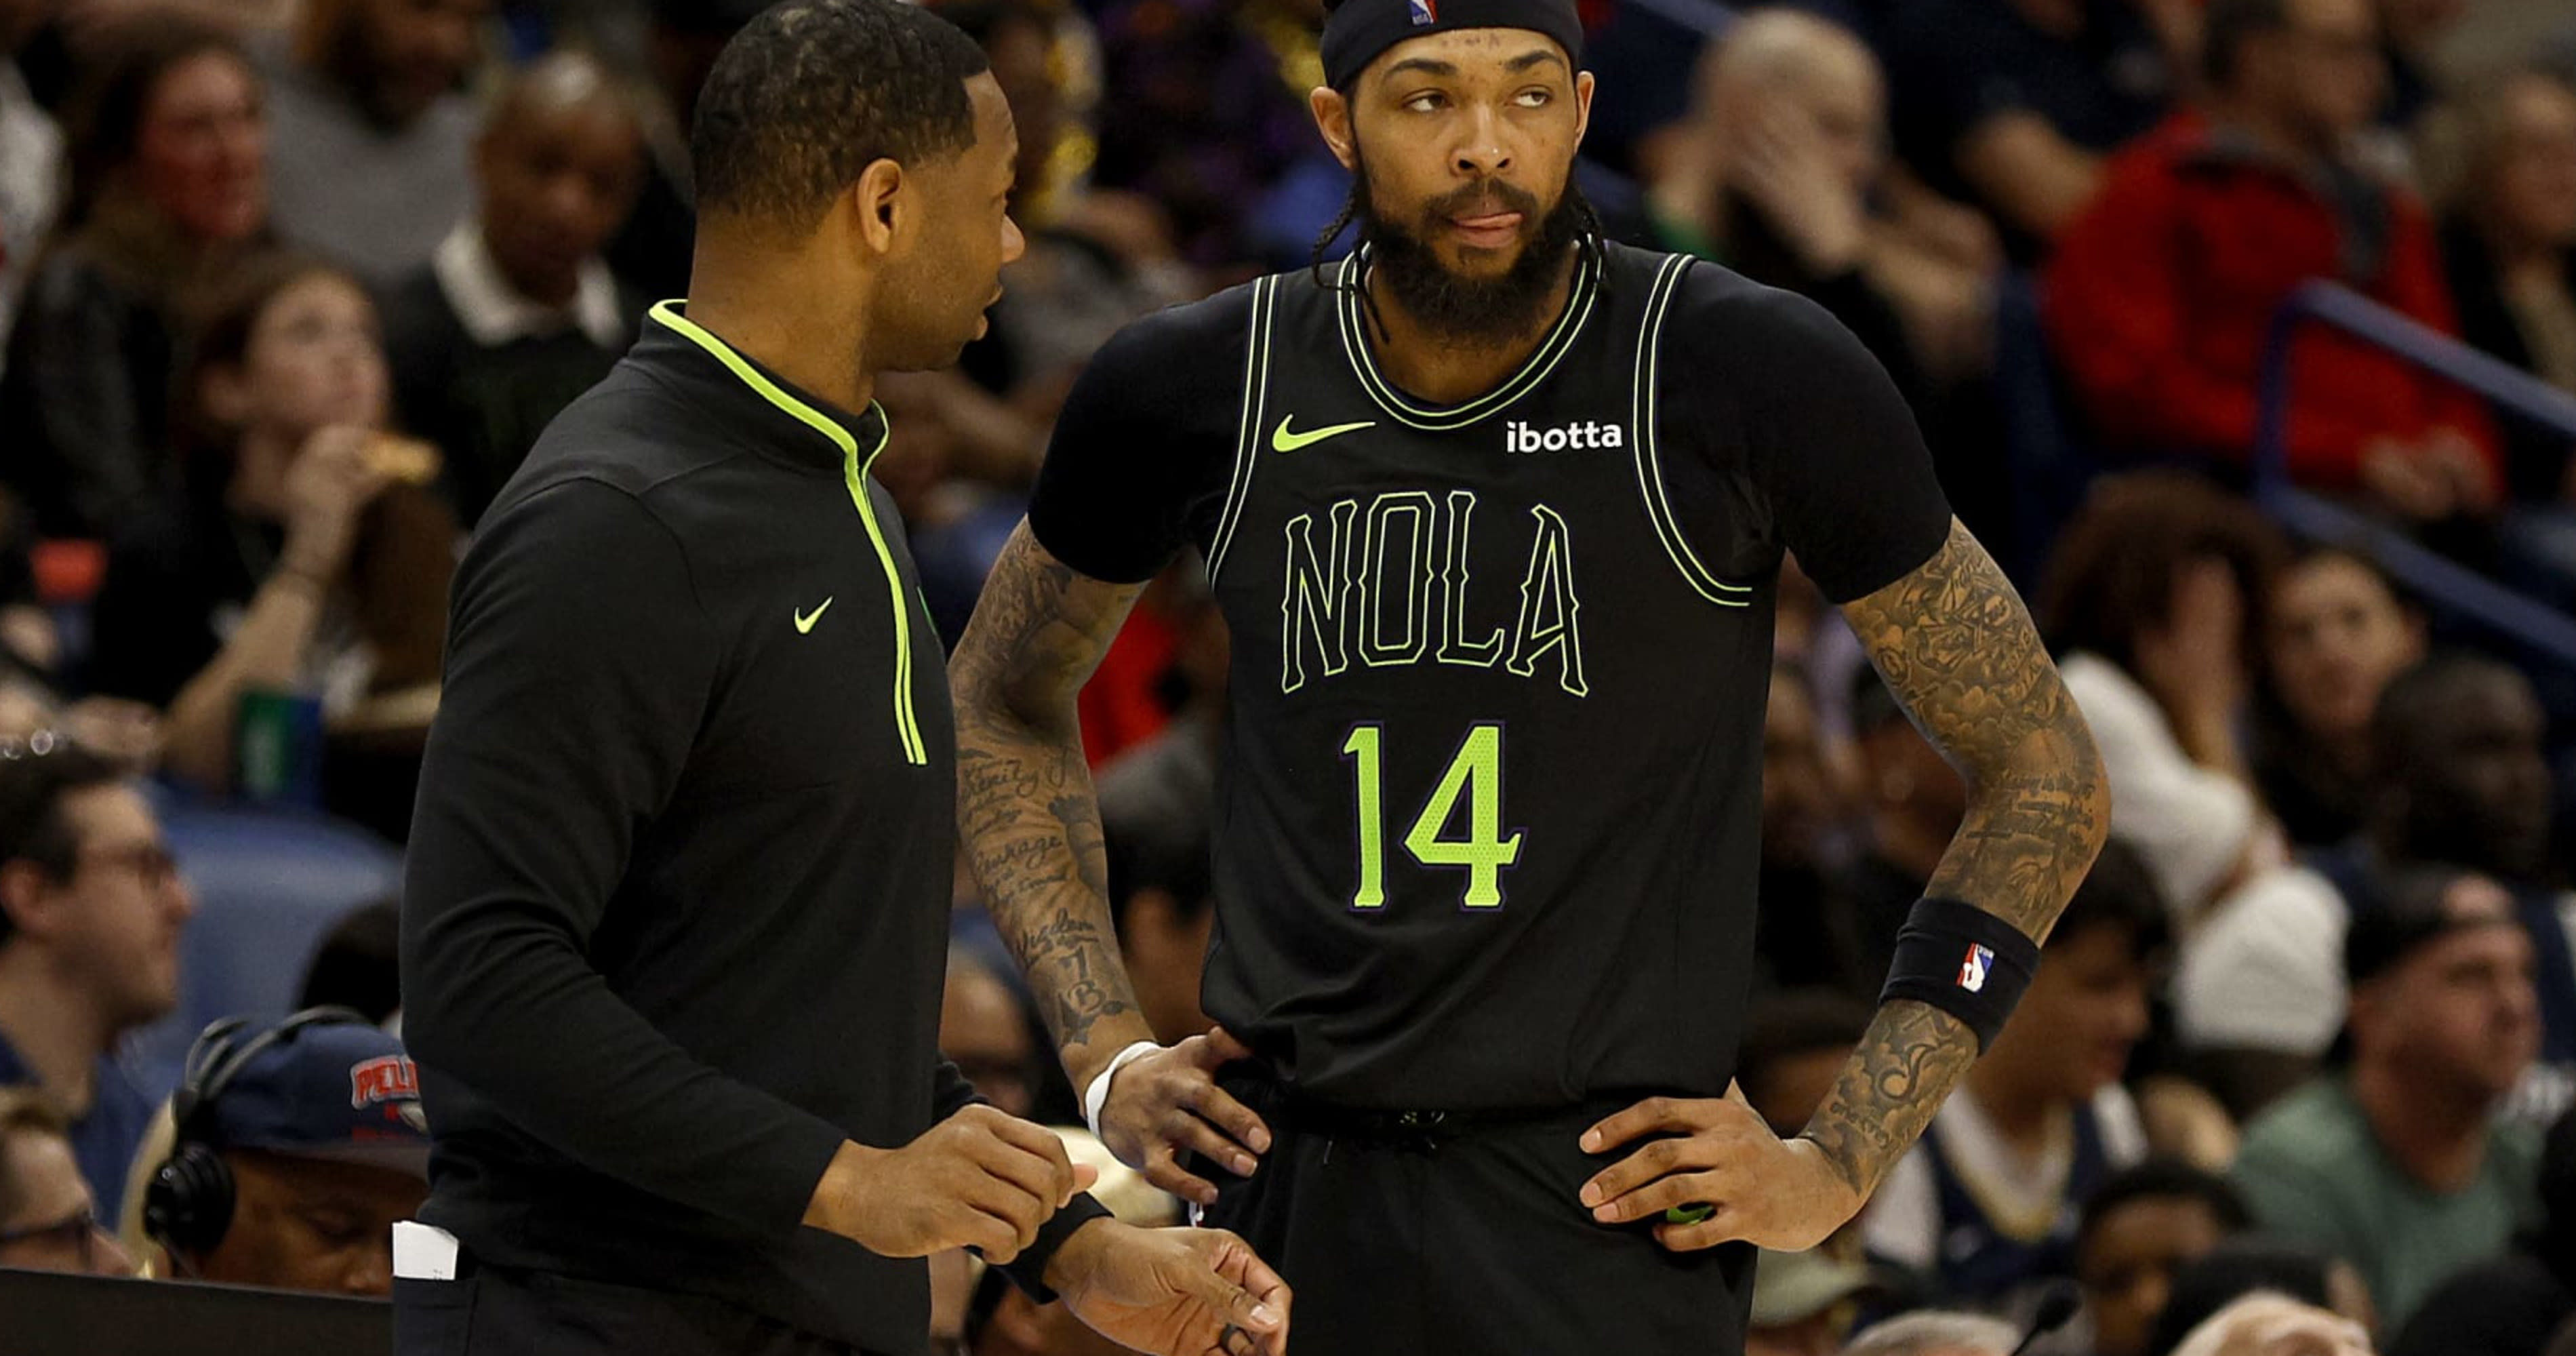 NBA Rumors: Pelicans' Brandon Ingram, Green Had 'Minor' Locker Room Spat vs. Thunder